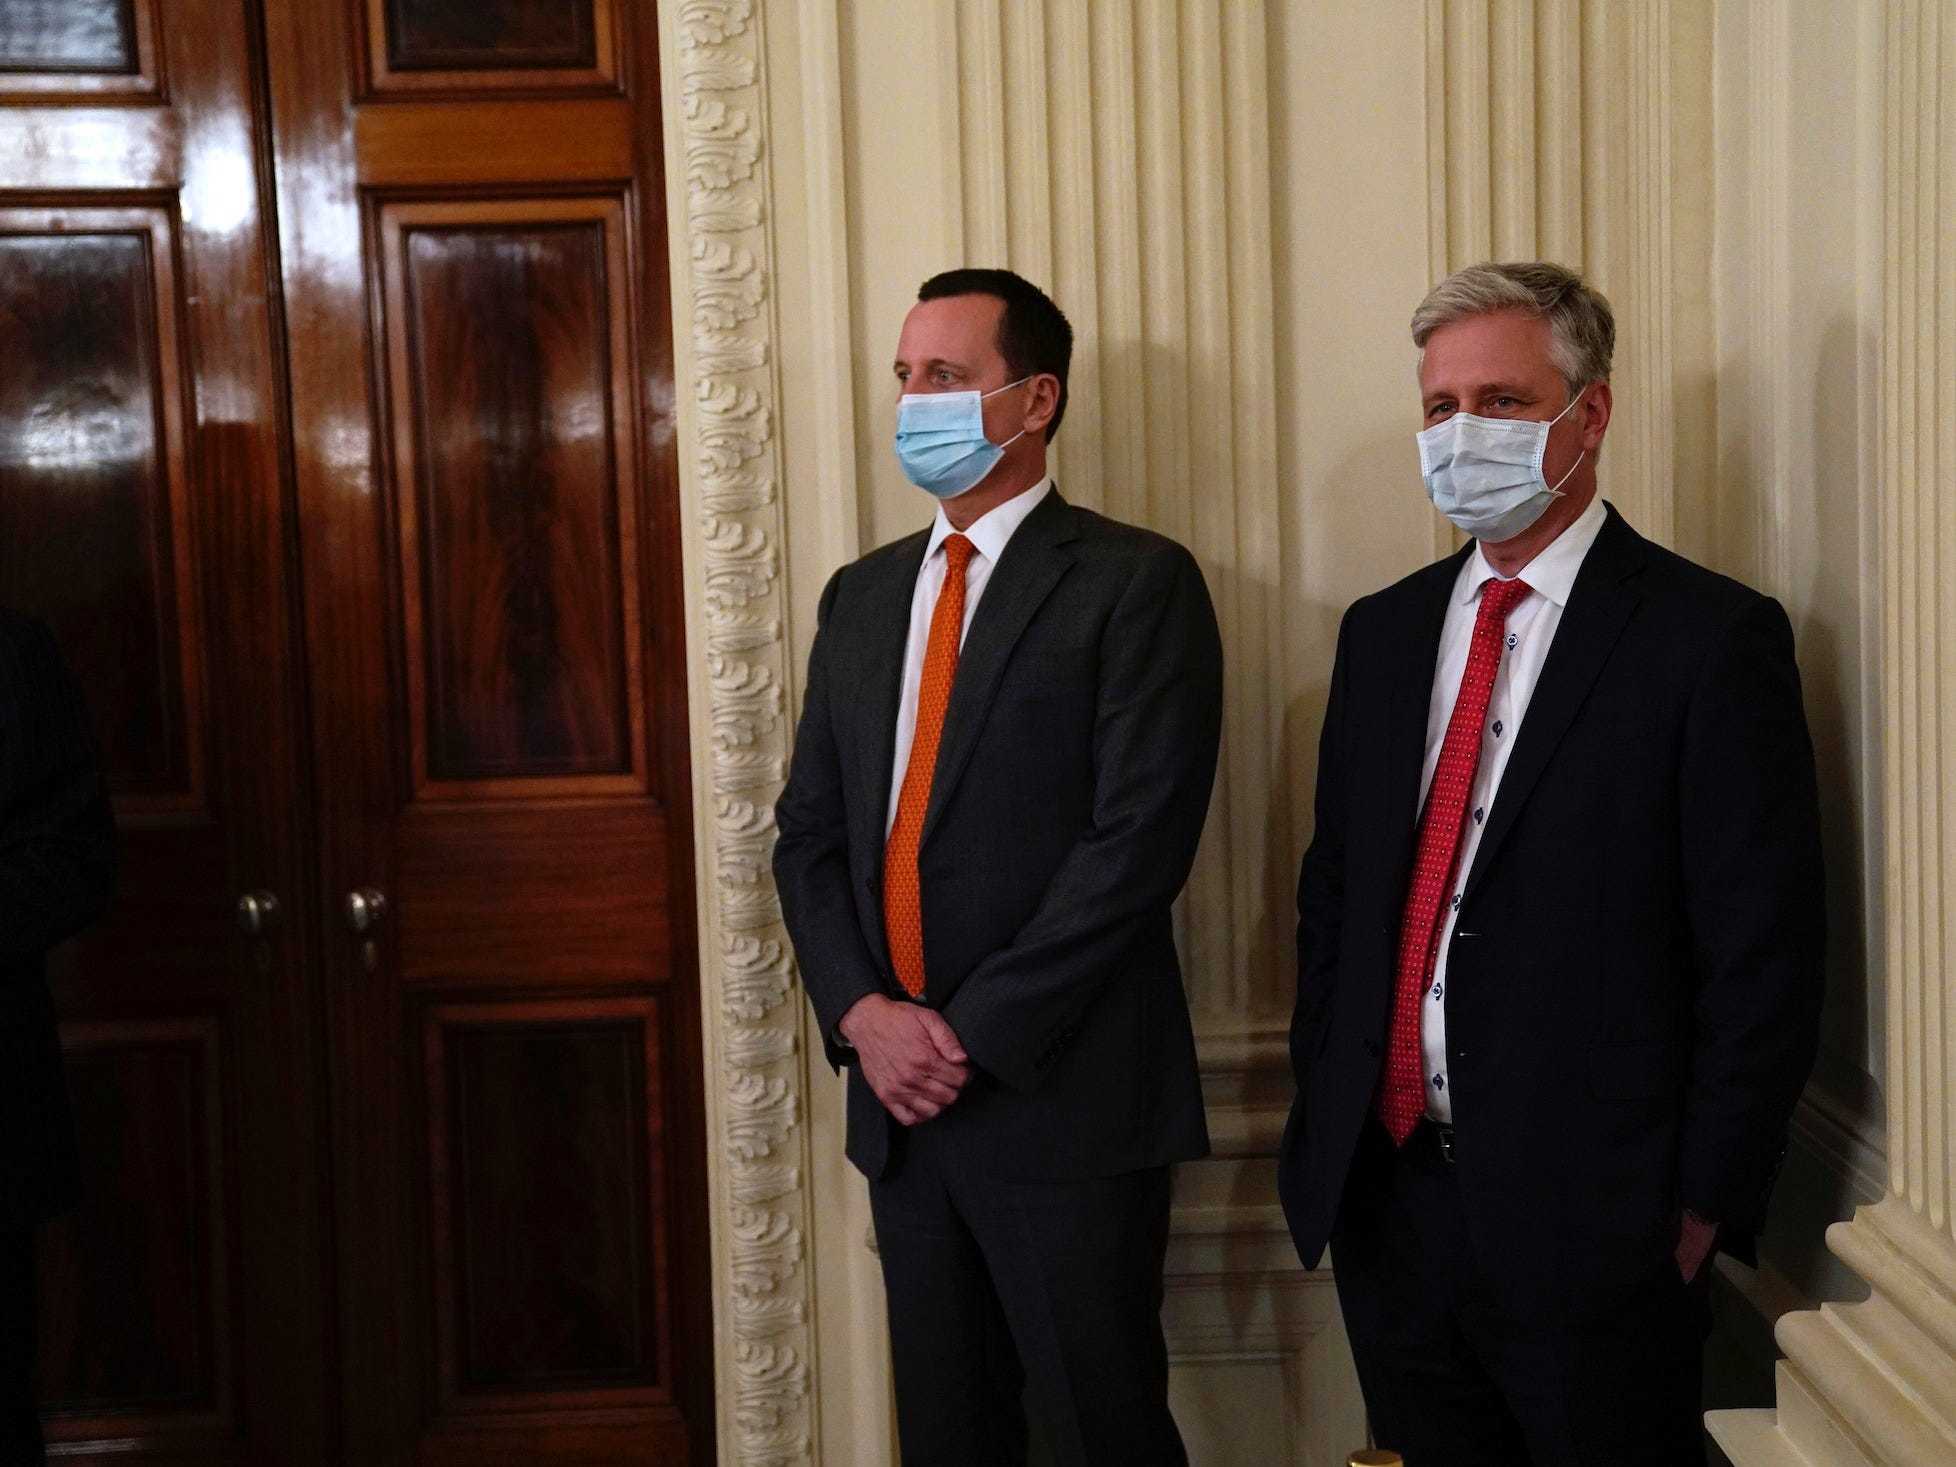 coronavirus at the white house